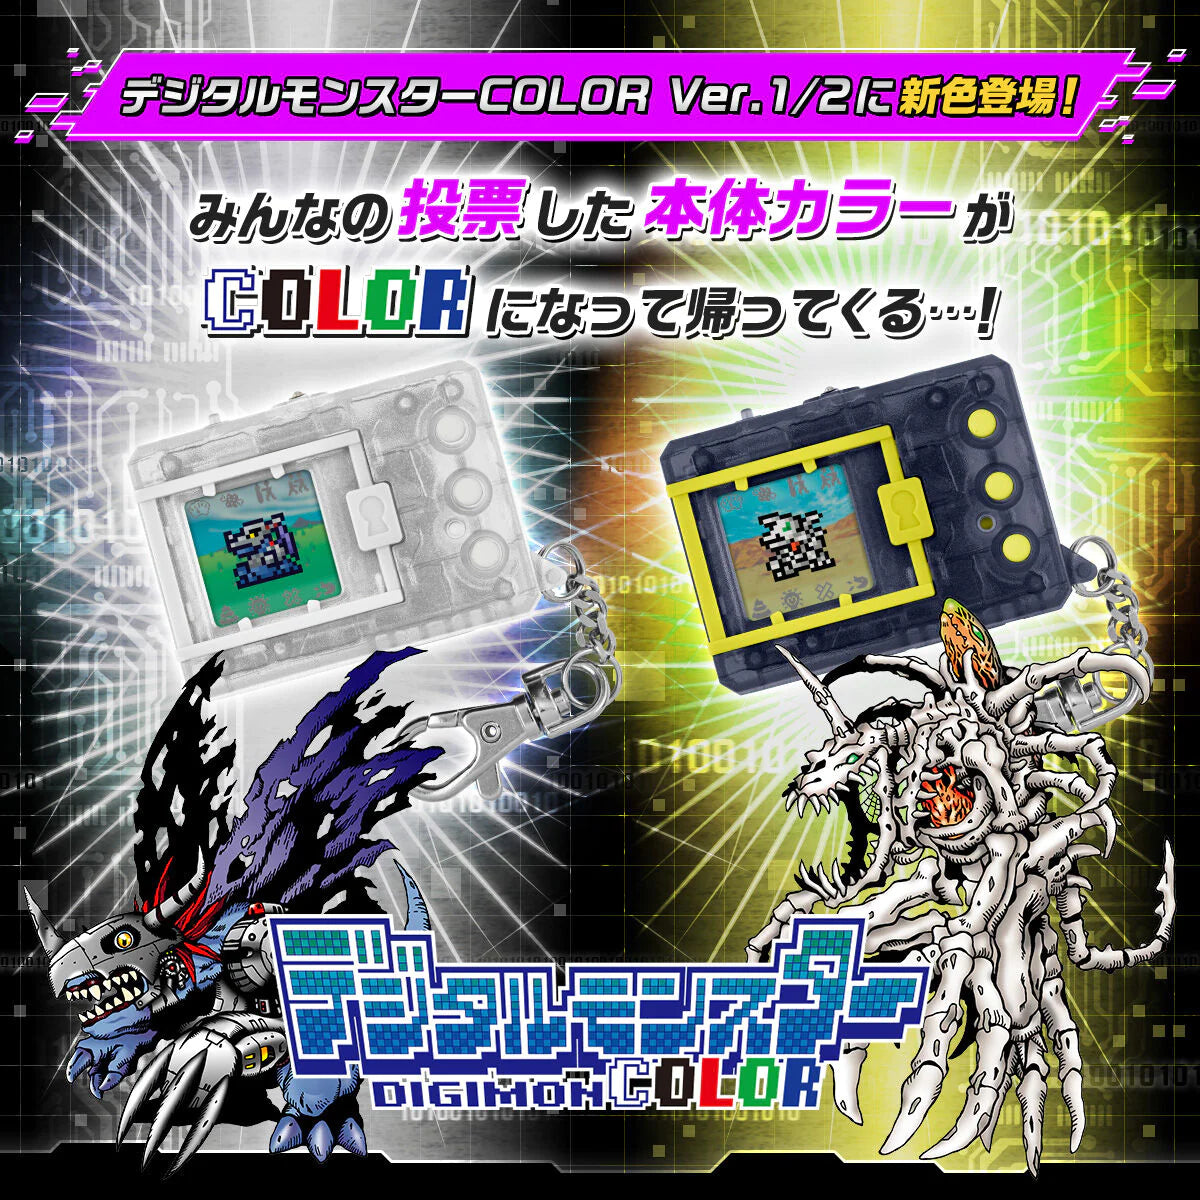 [IN STOCK in HK] Digimon COLOUR Ver.2 Original Smoke